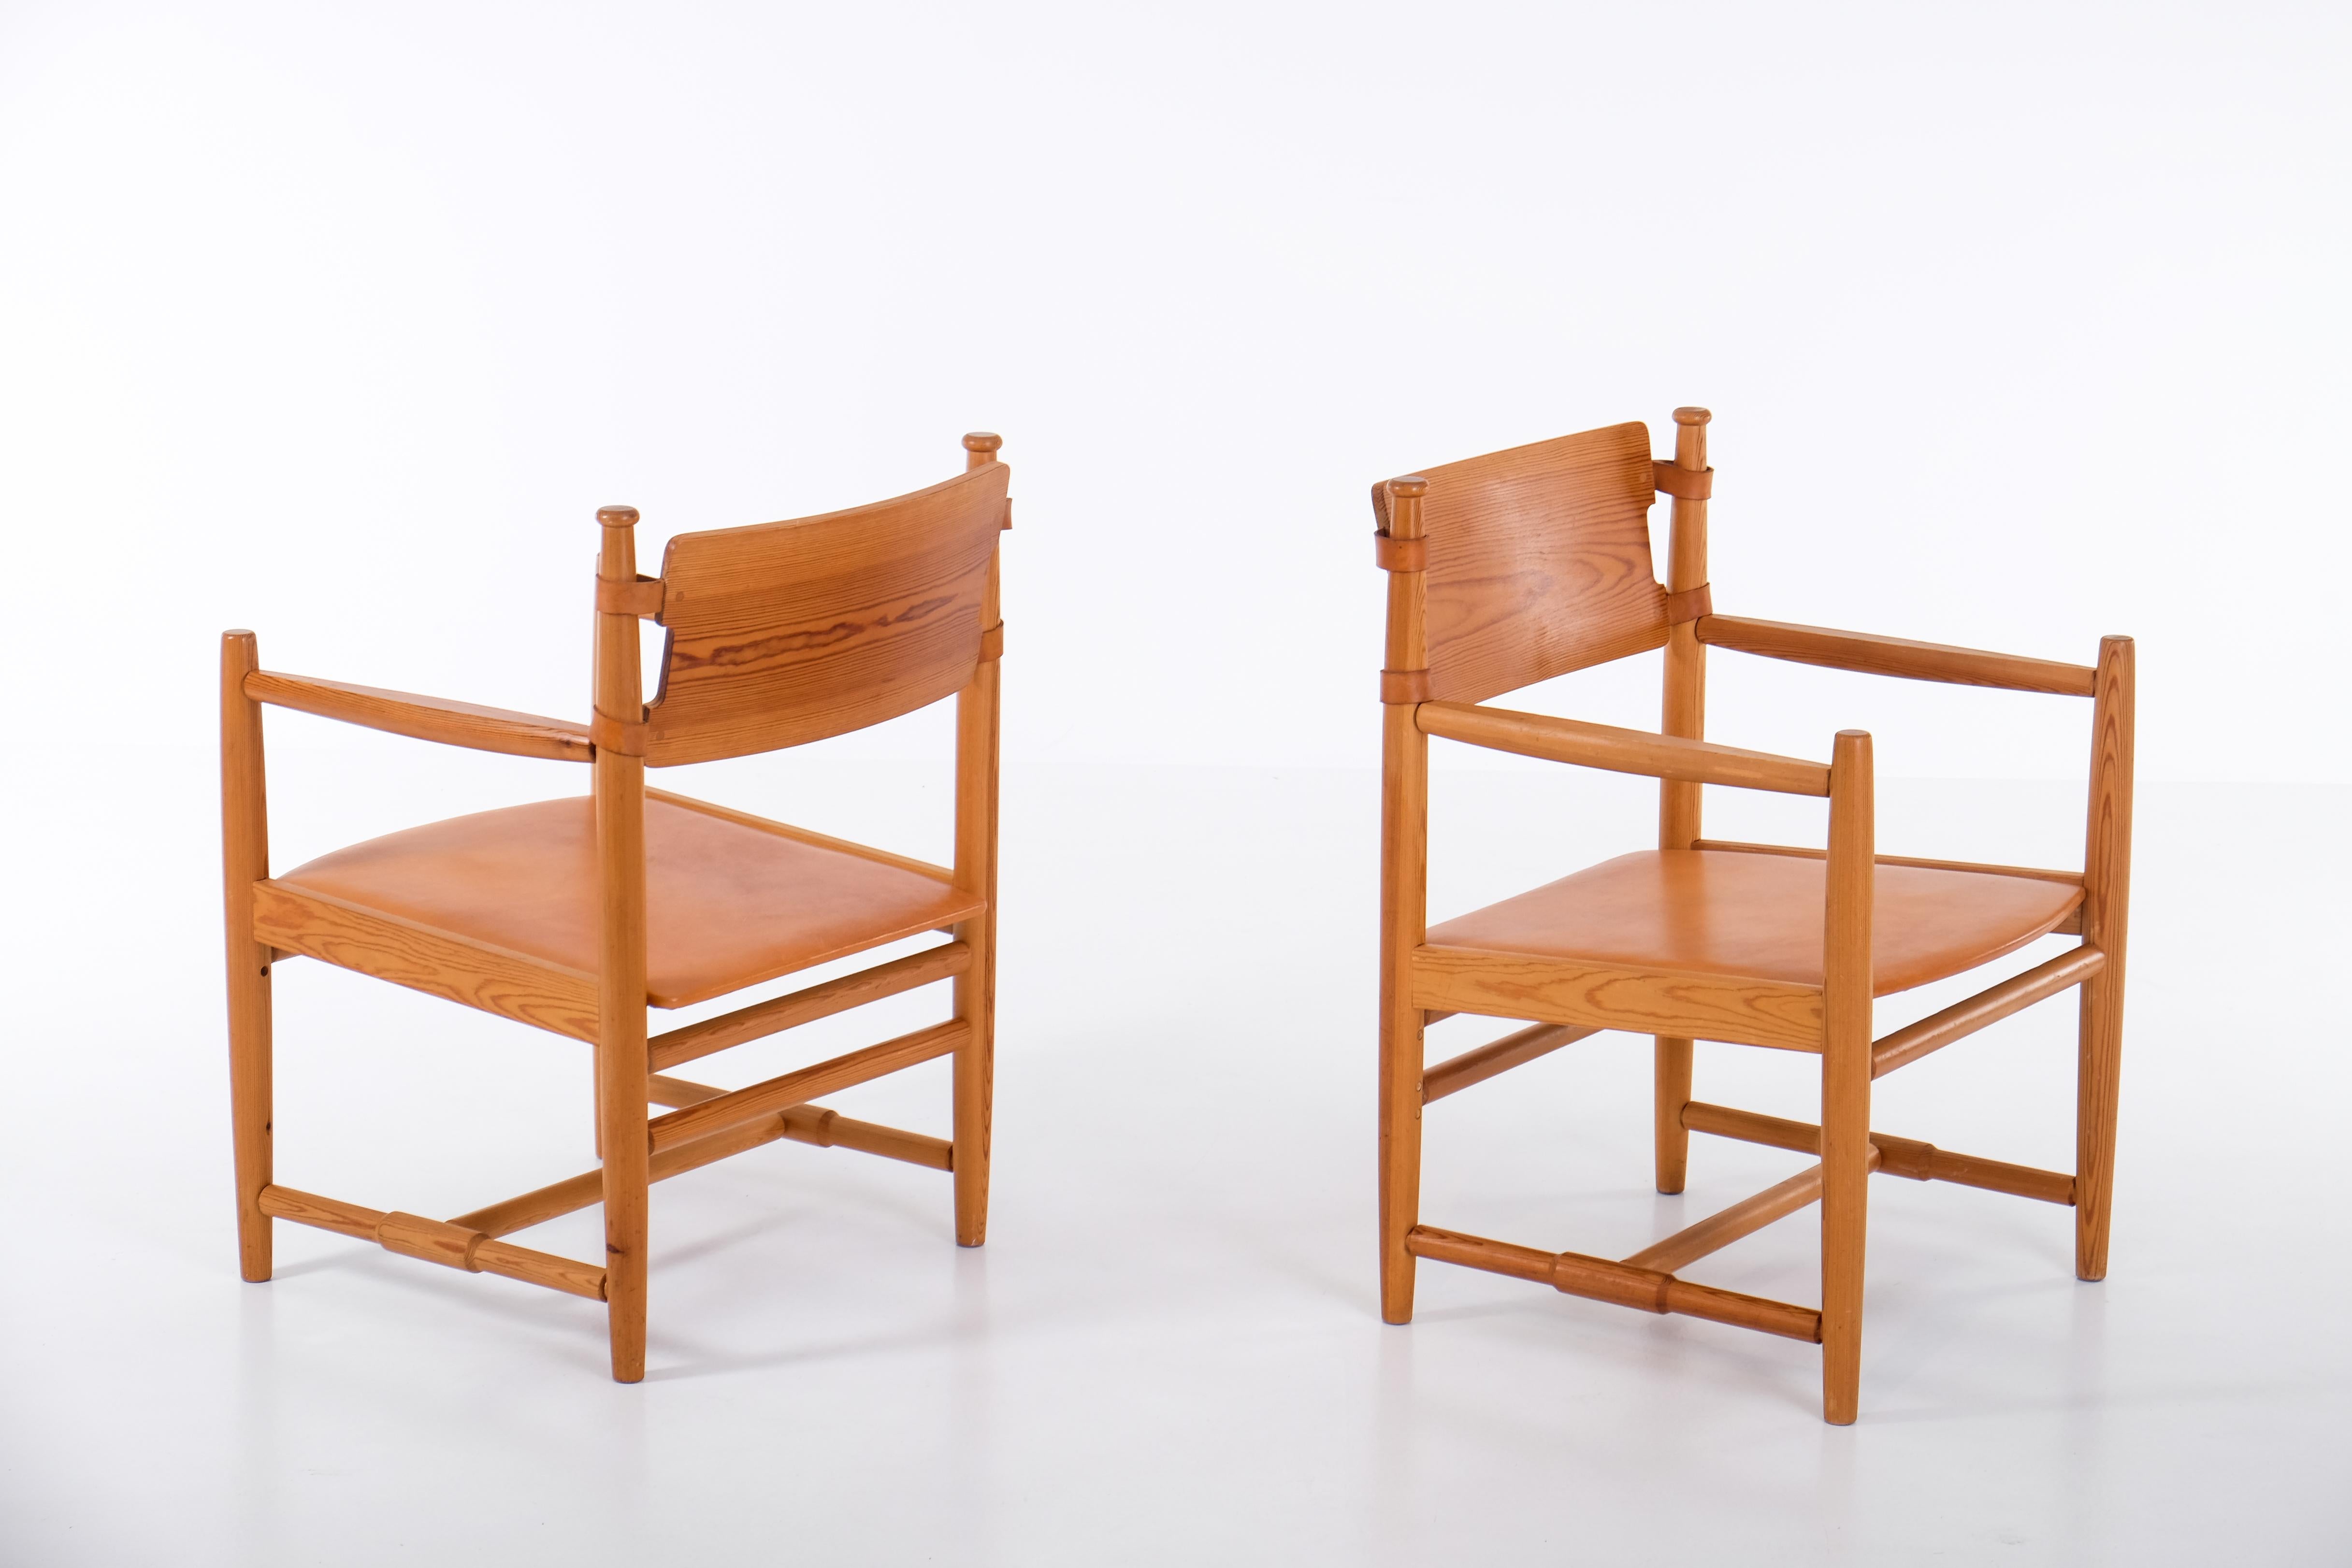 Schöner Satz von 3 schwedischen Sesseln in Kiefer, produziert 1960er Jahre.
Neue Ledersitze. Sehr guter Zustand.
Satz von 3 verfügbar. Der angegebene Preis gilt für einen (1) Stuhl. 
   